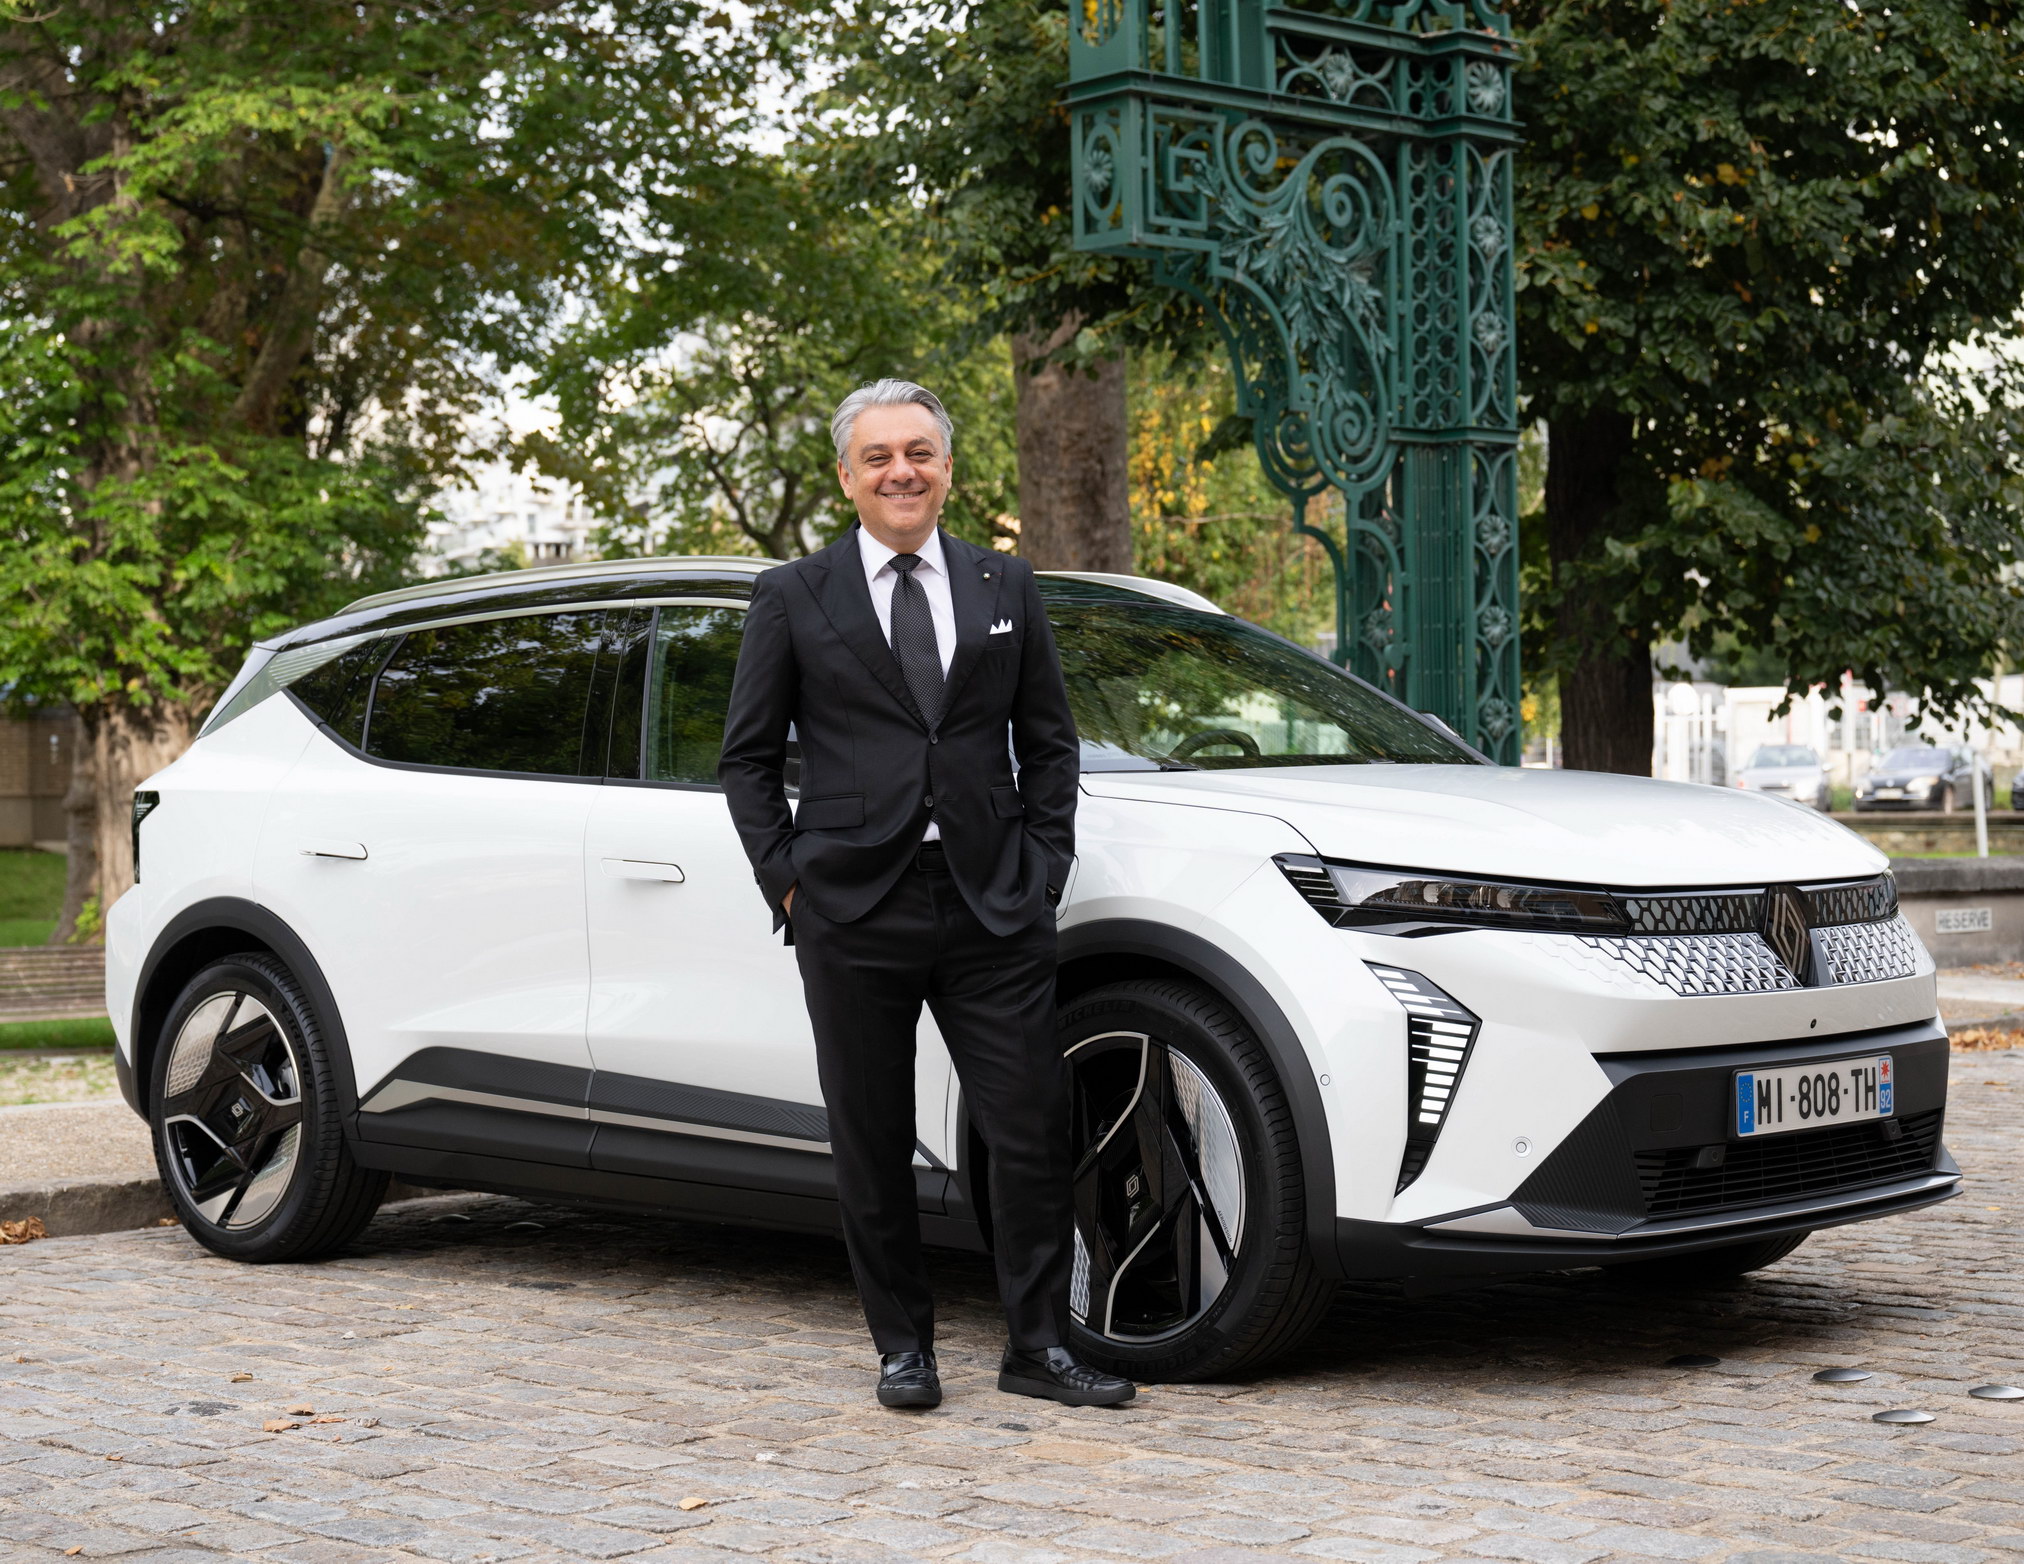 Renault Group CEO, Luca de Meo, tops Autocar’s Power List 100